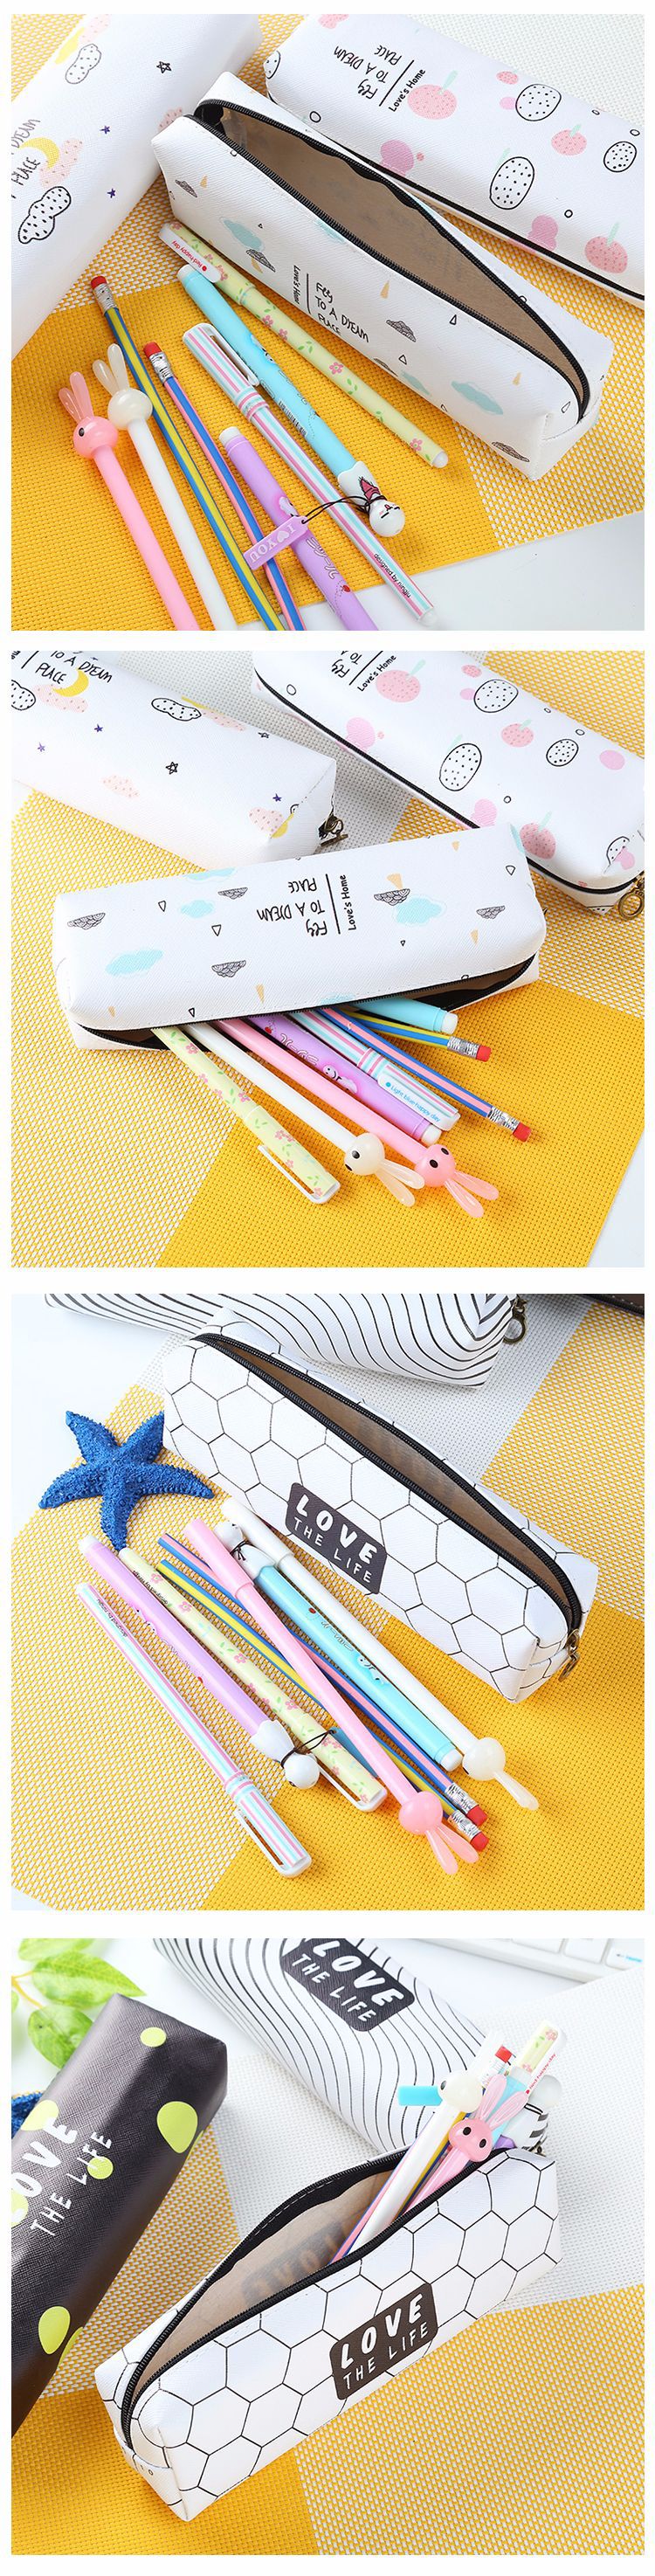 韓國創意文具 簡約小清新LOVE筆袋 男女學生大容量文具袋學習用品